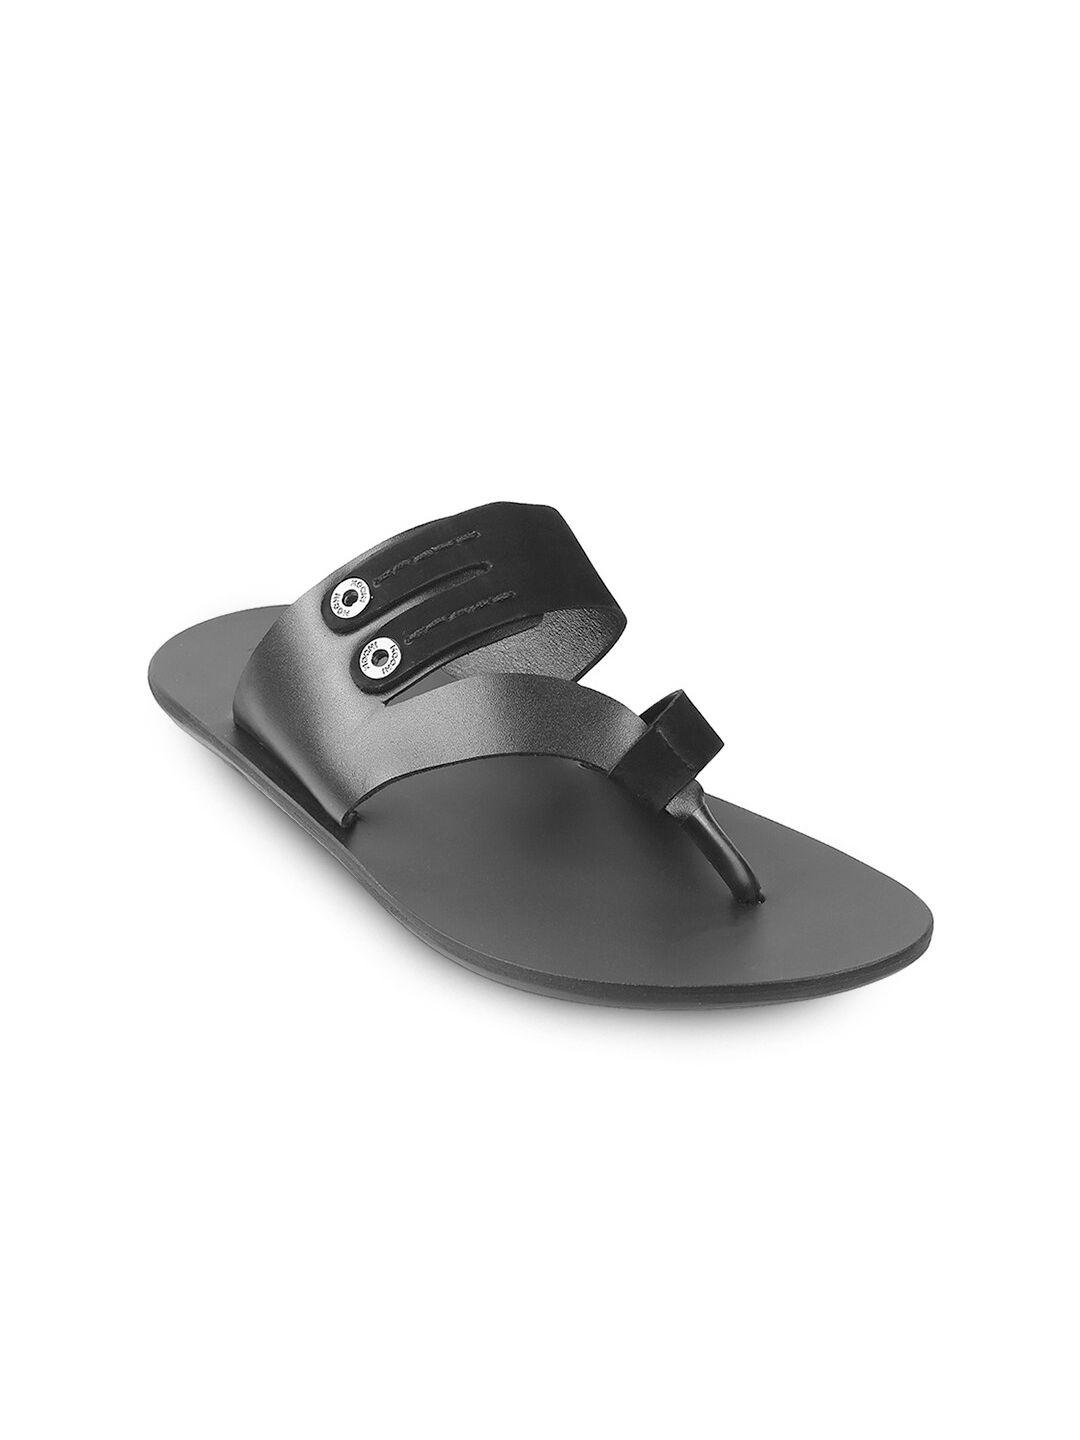 mochi men black leather comfort slip on sandals